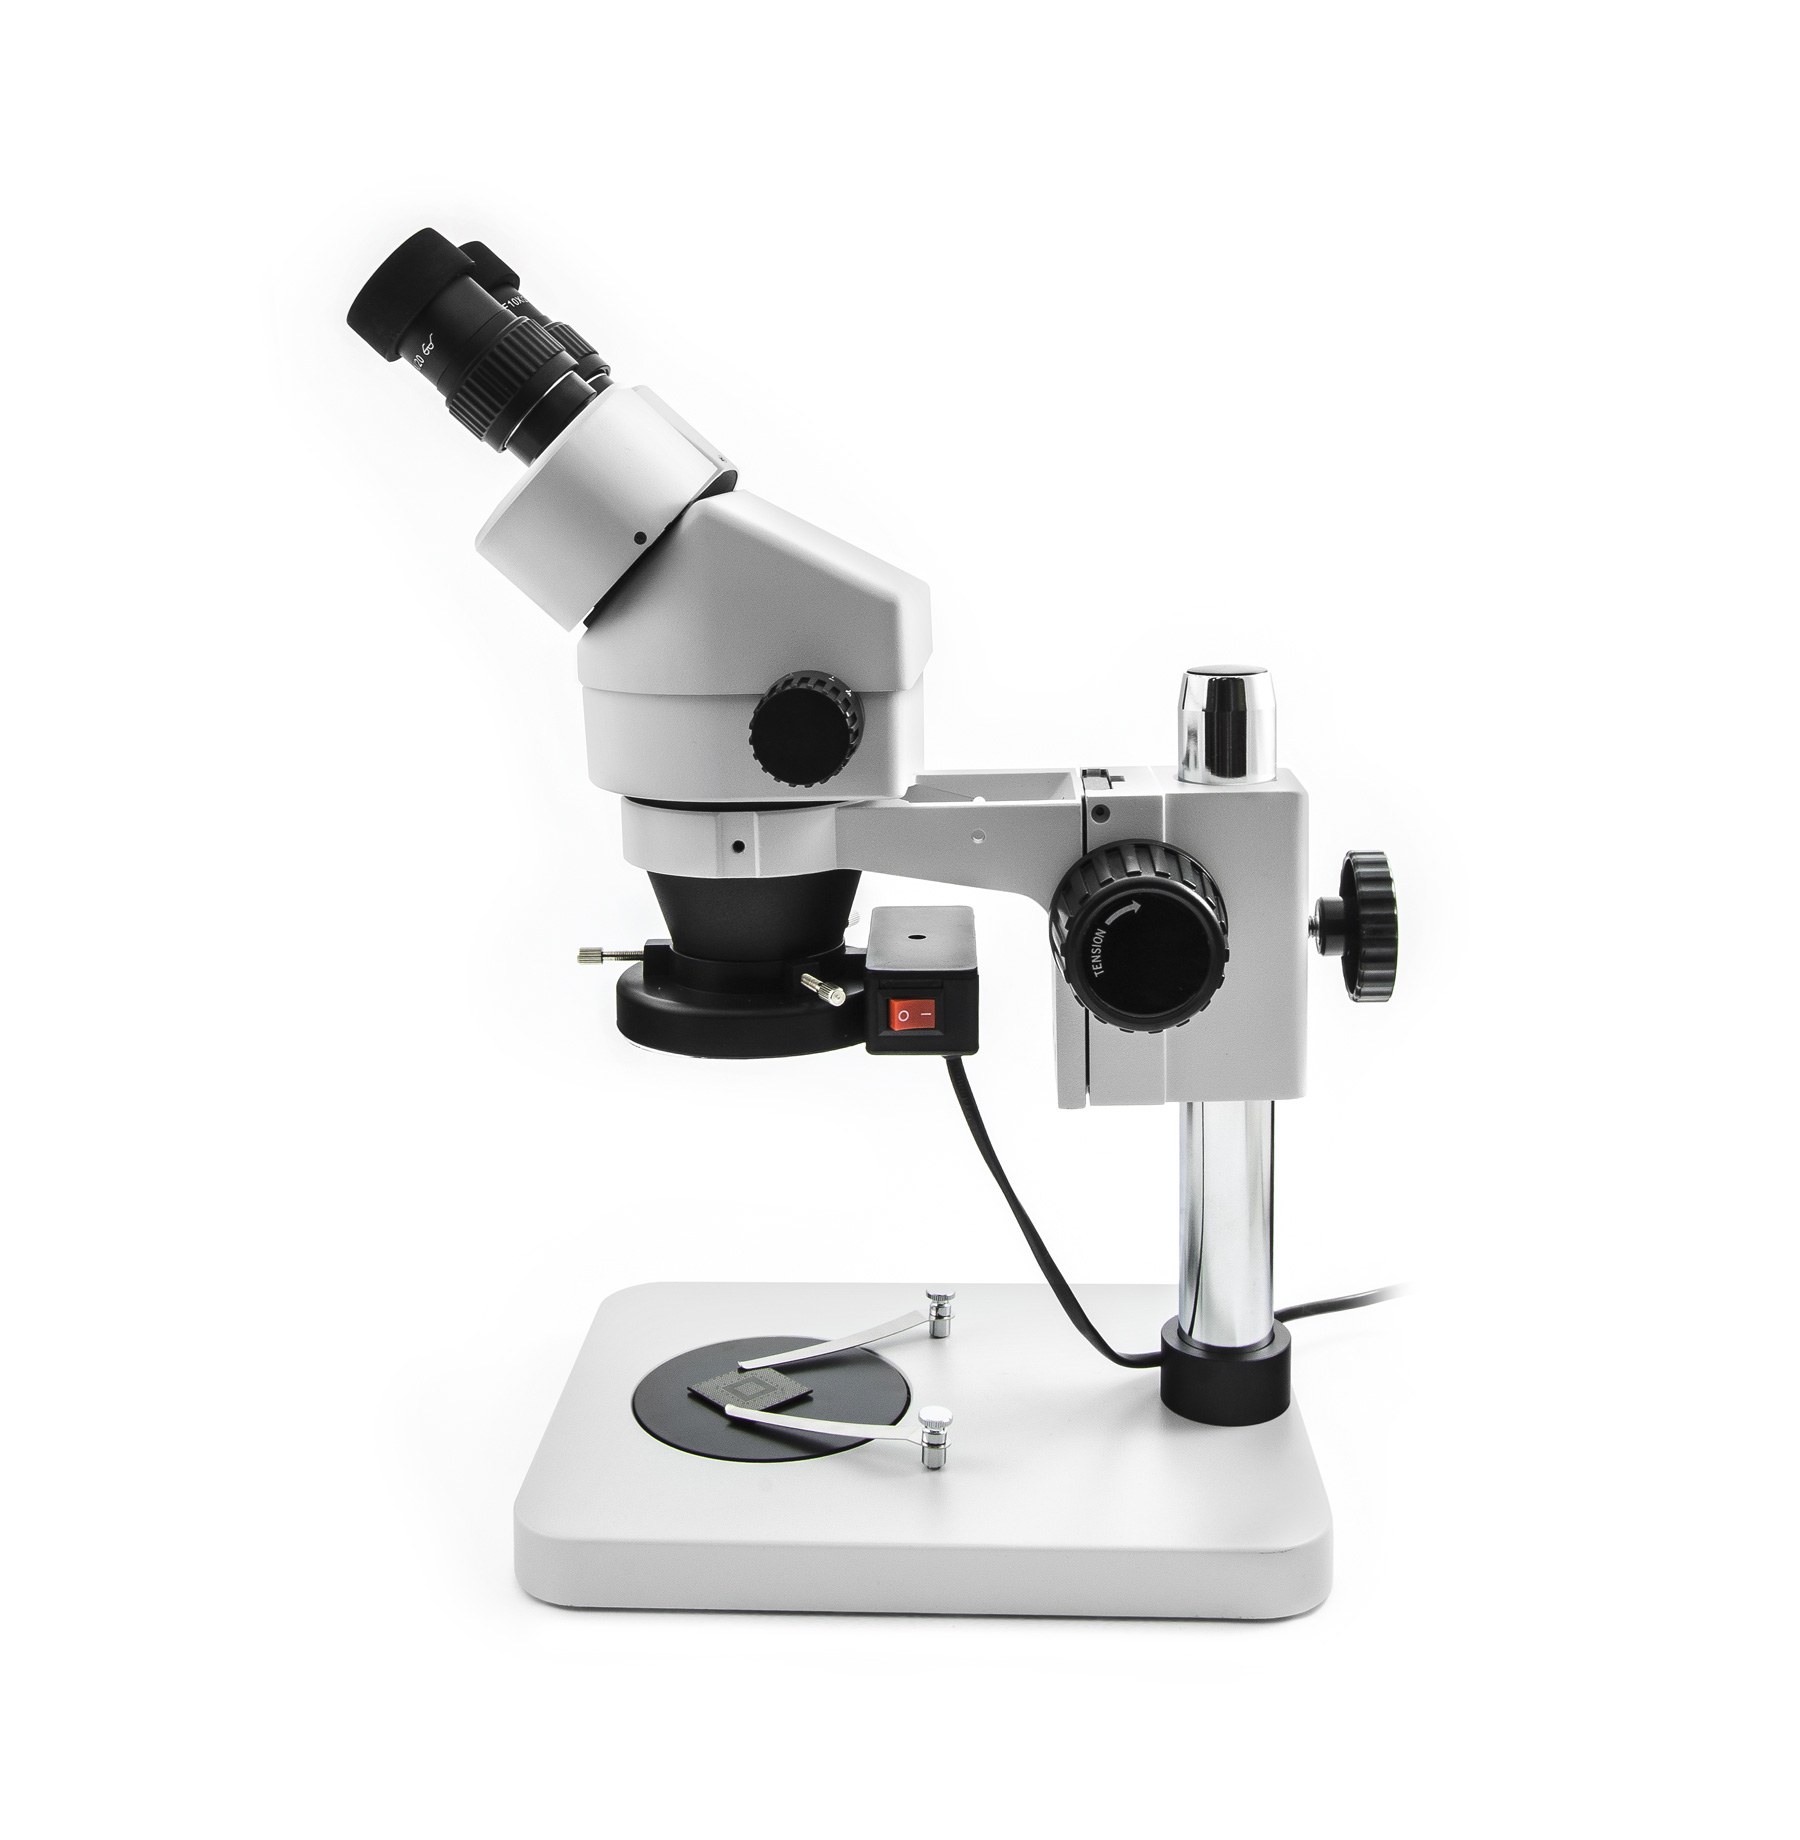 Stereoskopický profesionální mikroskop Yaxun YX-AK10 se zvětšením 7 - 45x